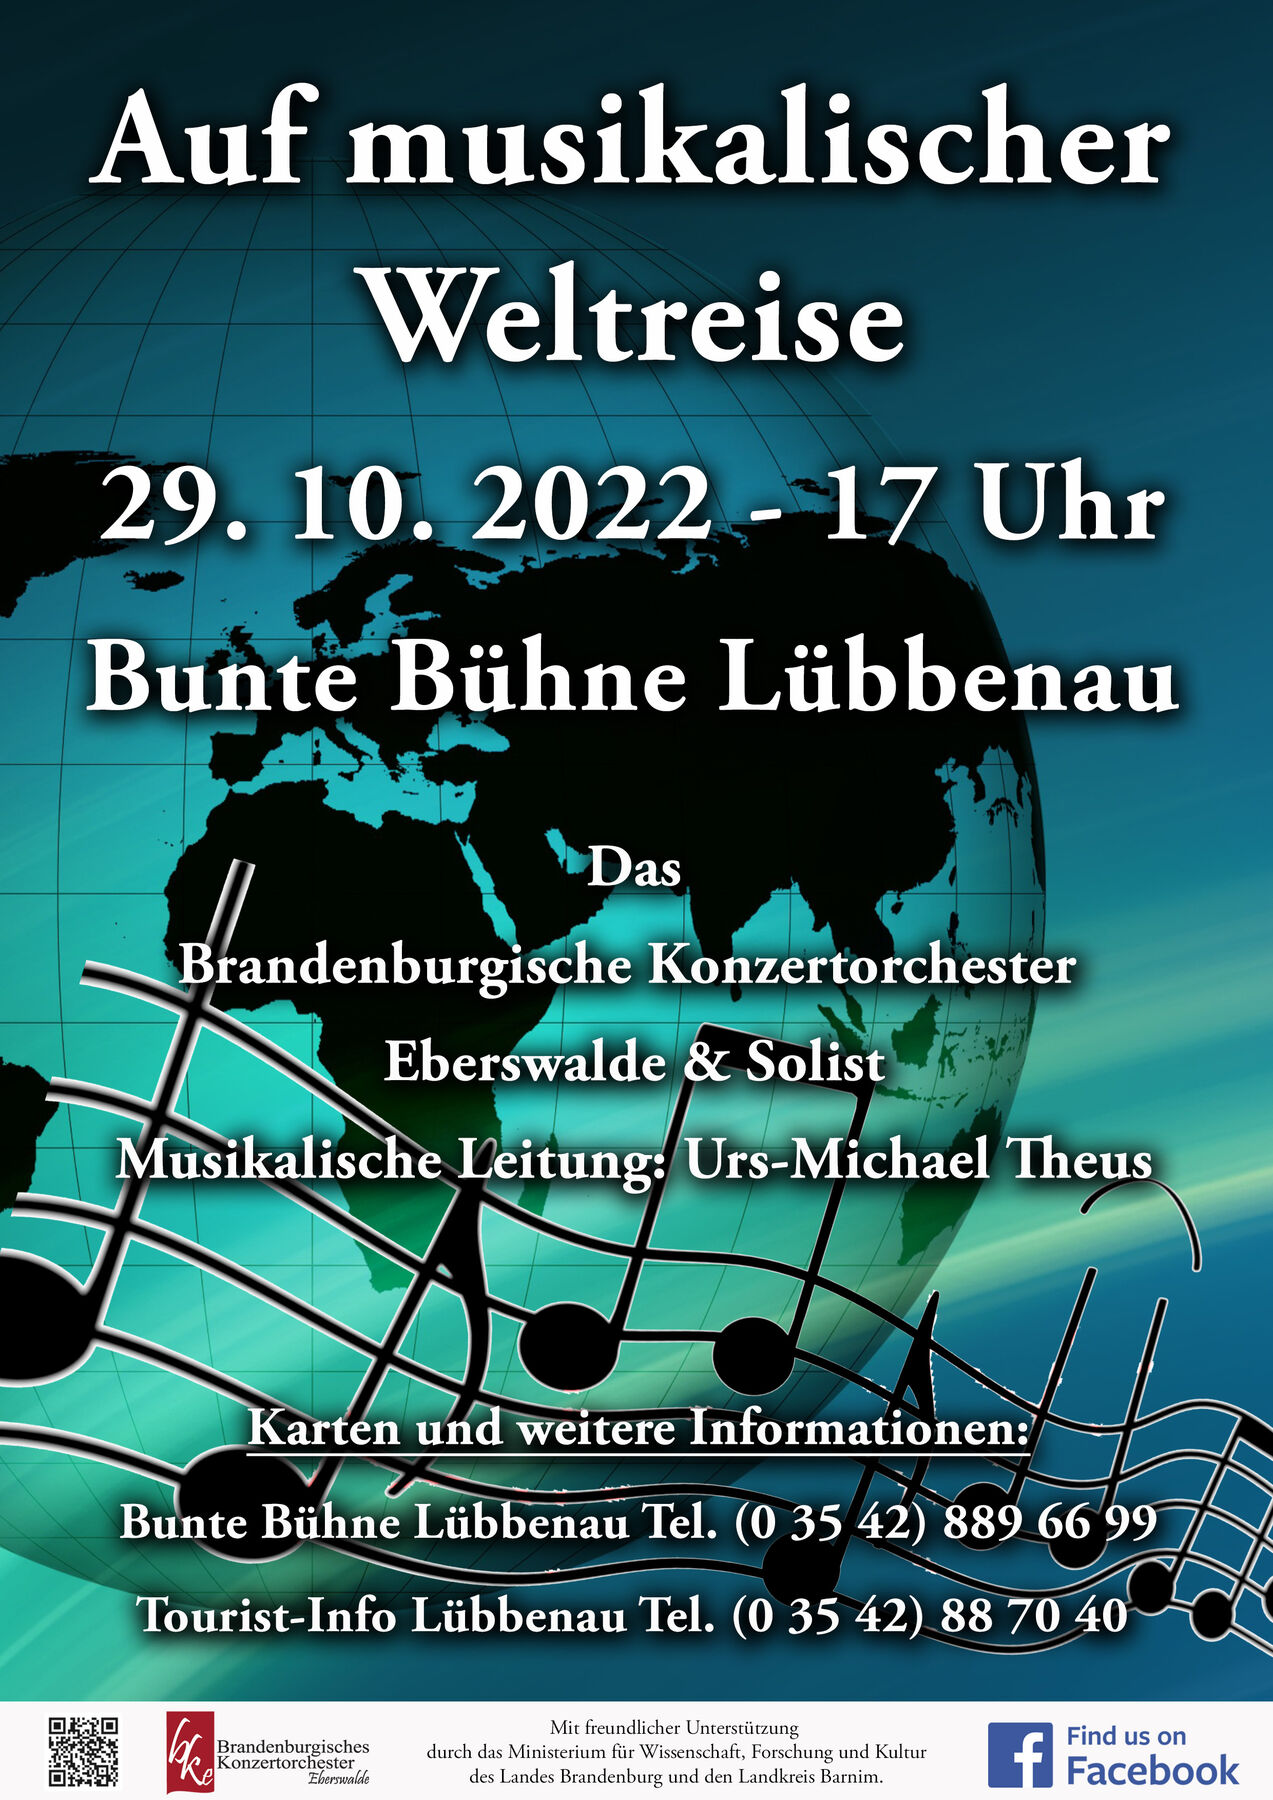 Foto: Brandeburgisches Konzertorchester Eberswalde